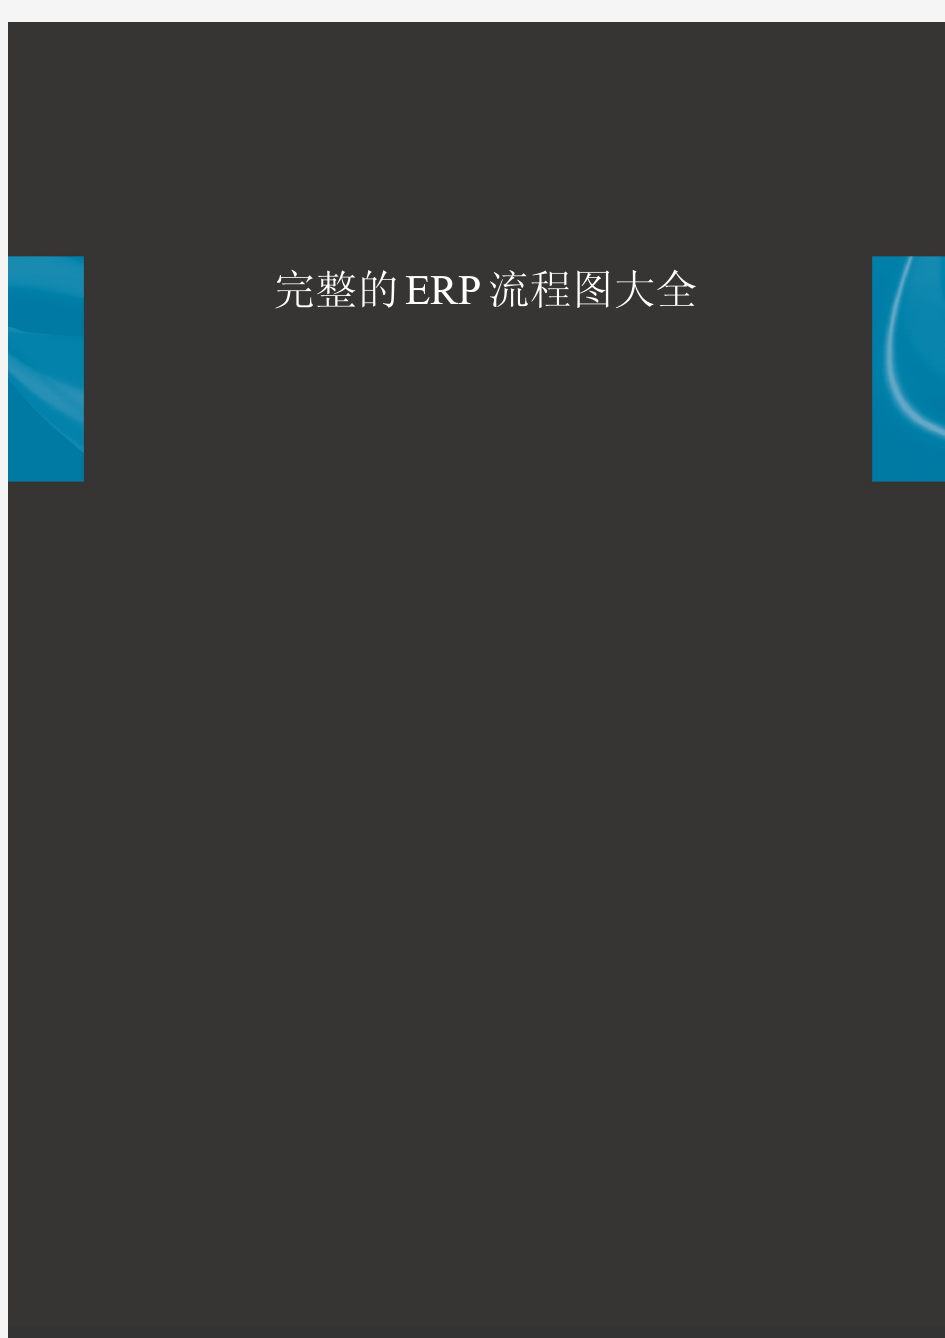 完整的ERP流程图大全